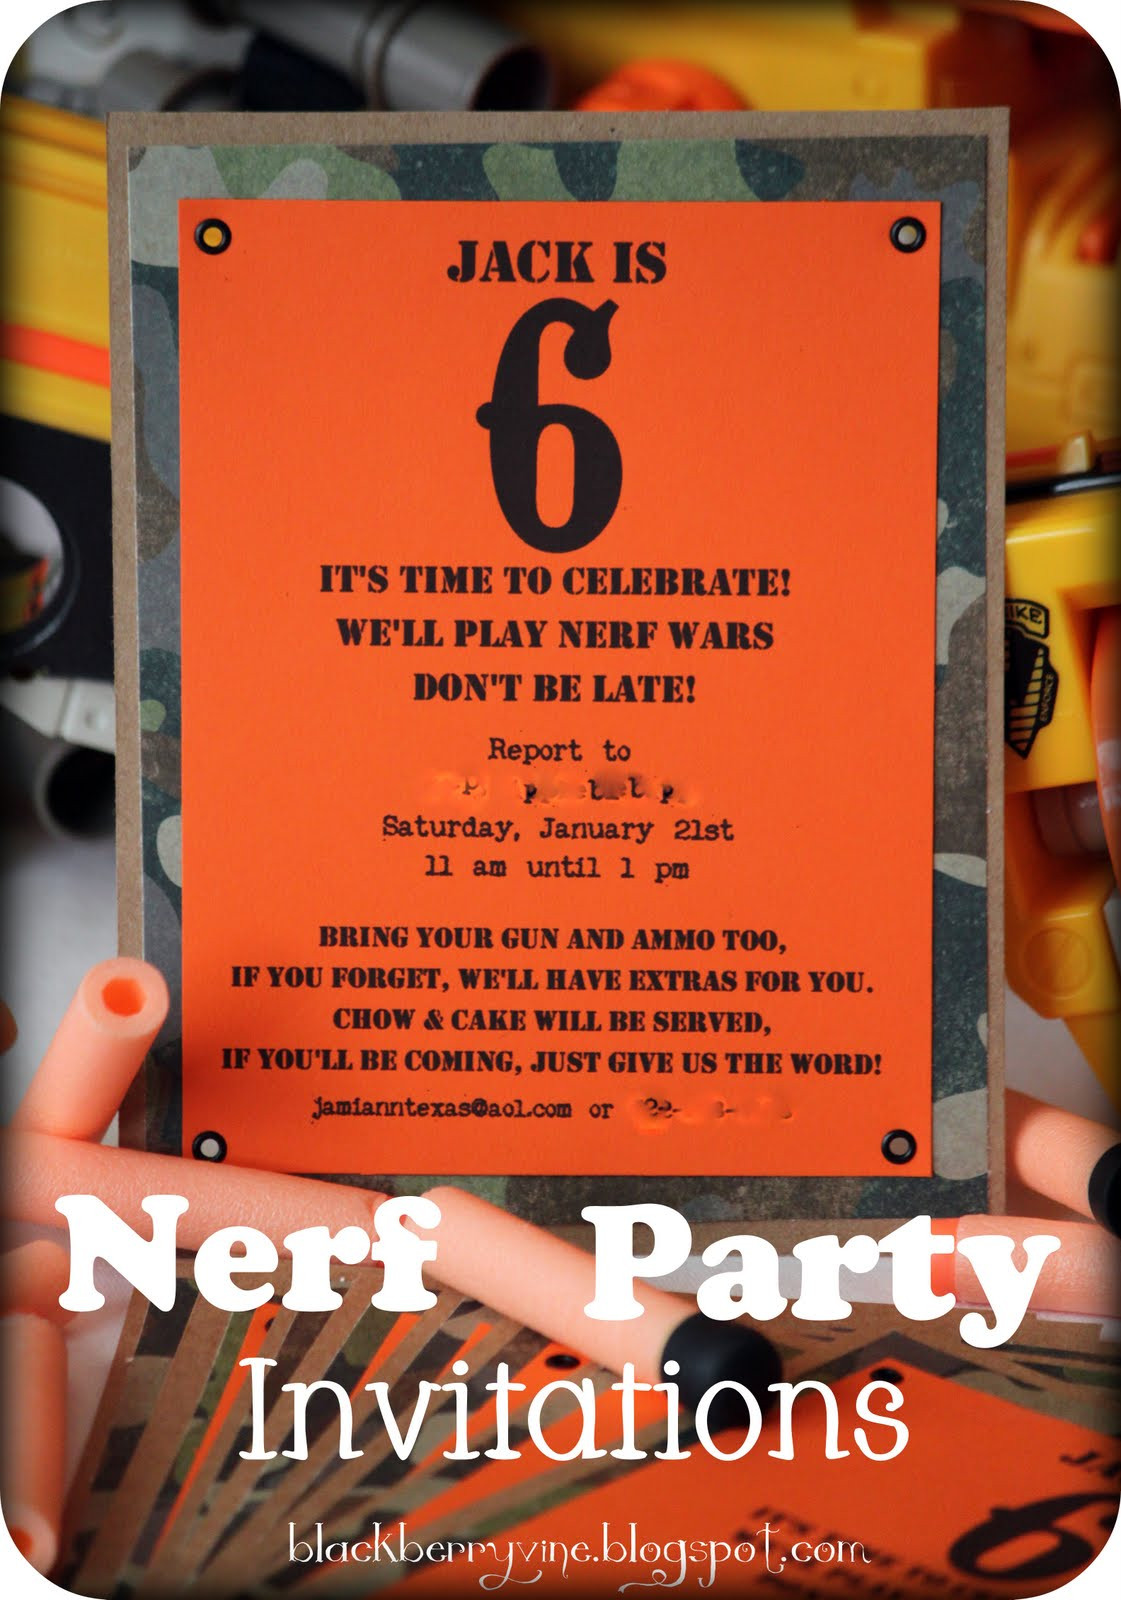 Nerf Birthday Party Invitations
 The Blackberry Vine Nerf Party Invitation